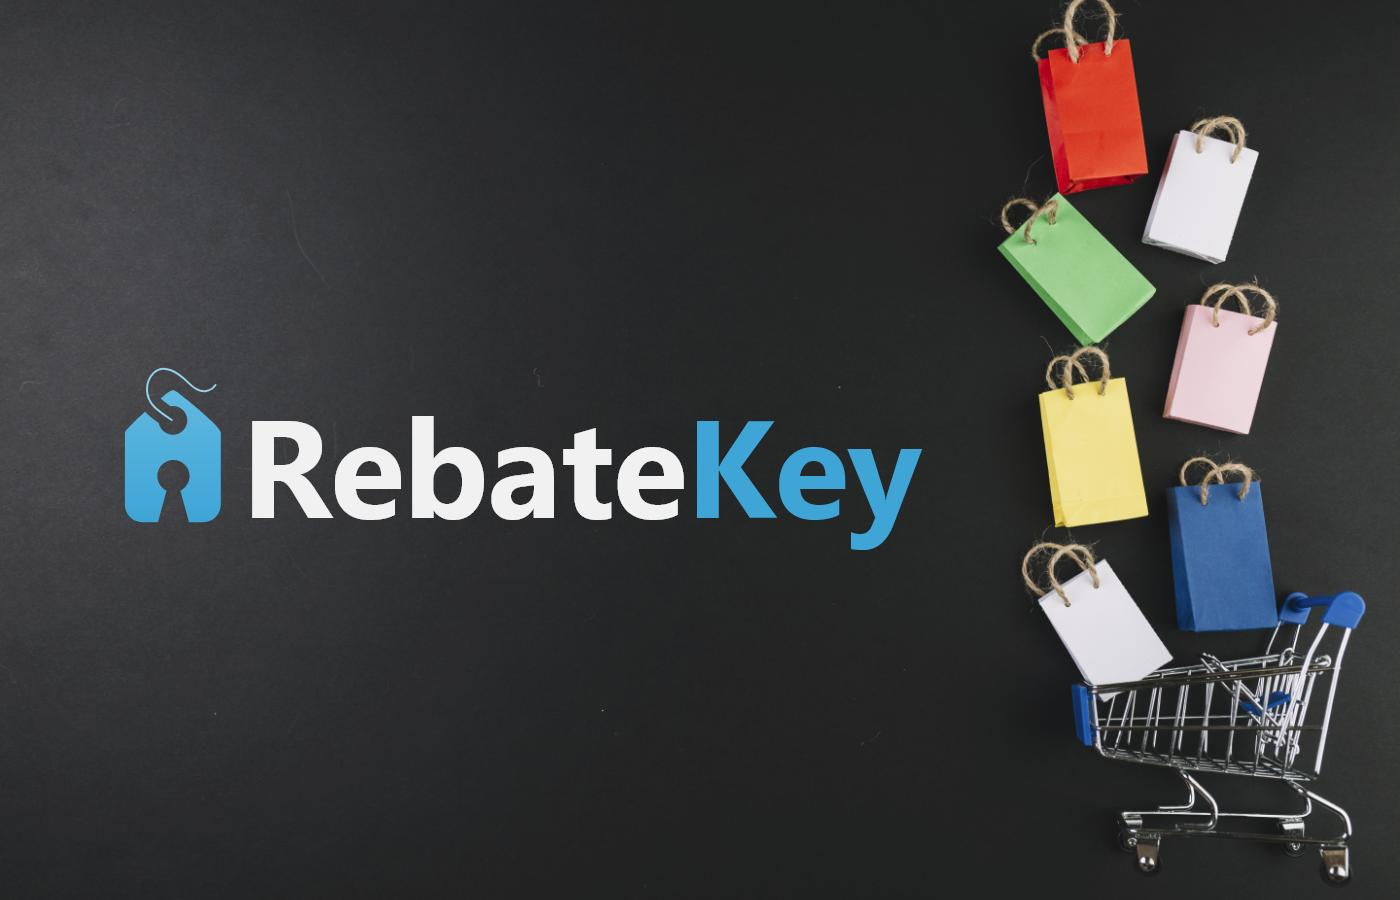 Rebate Key